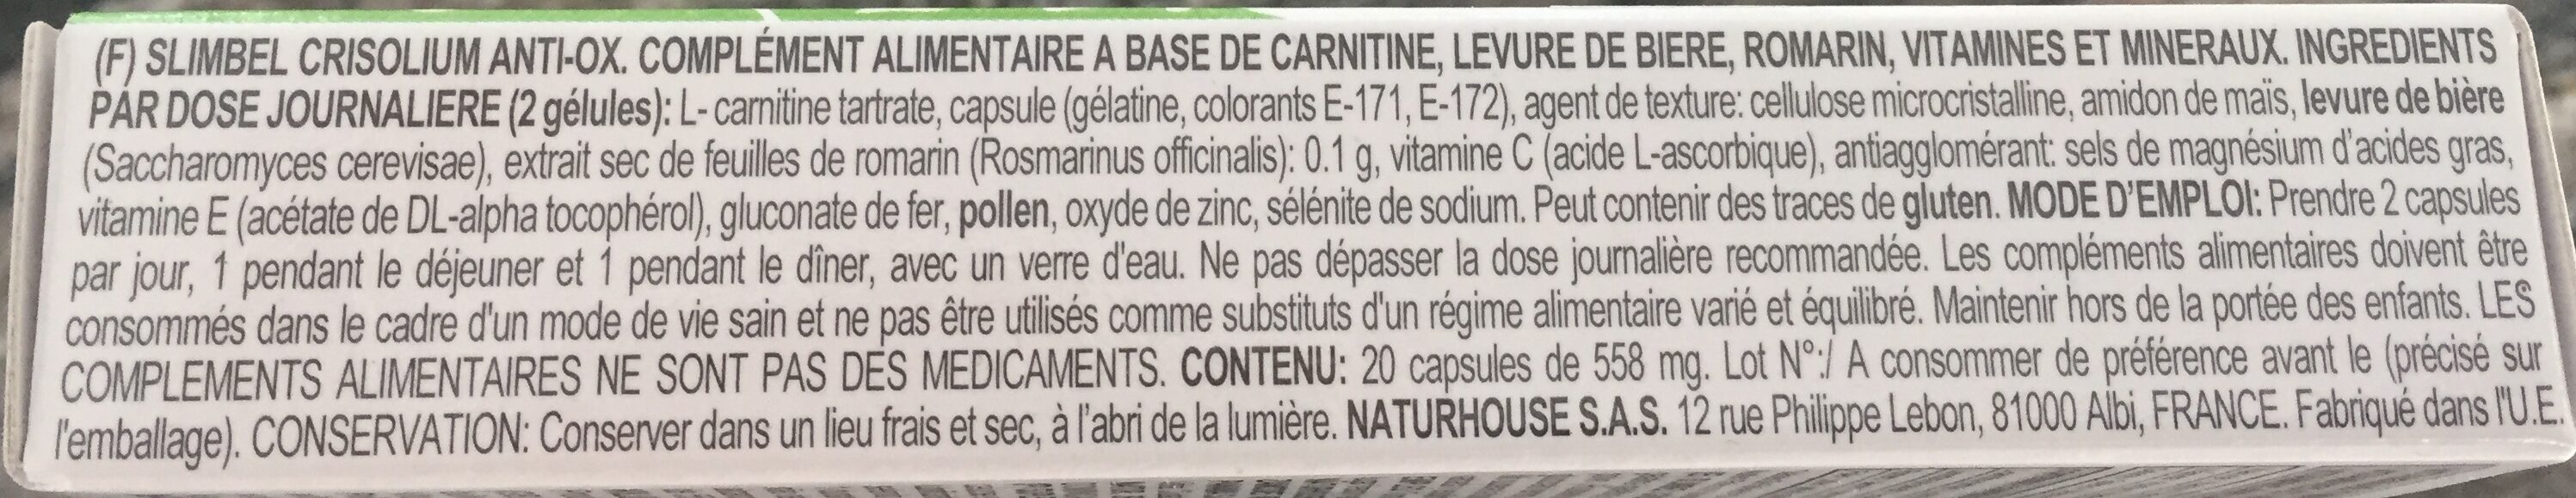 Slimbel Crisolium Anti-Ox - Ingredienti - fr